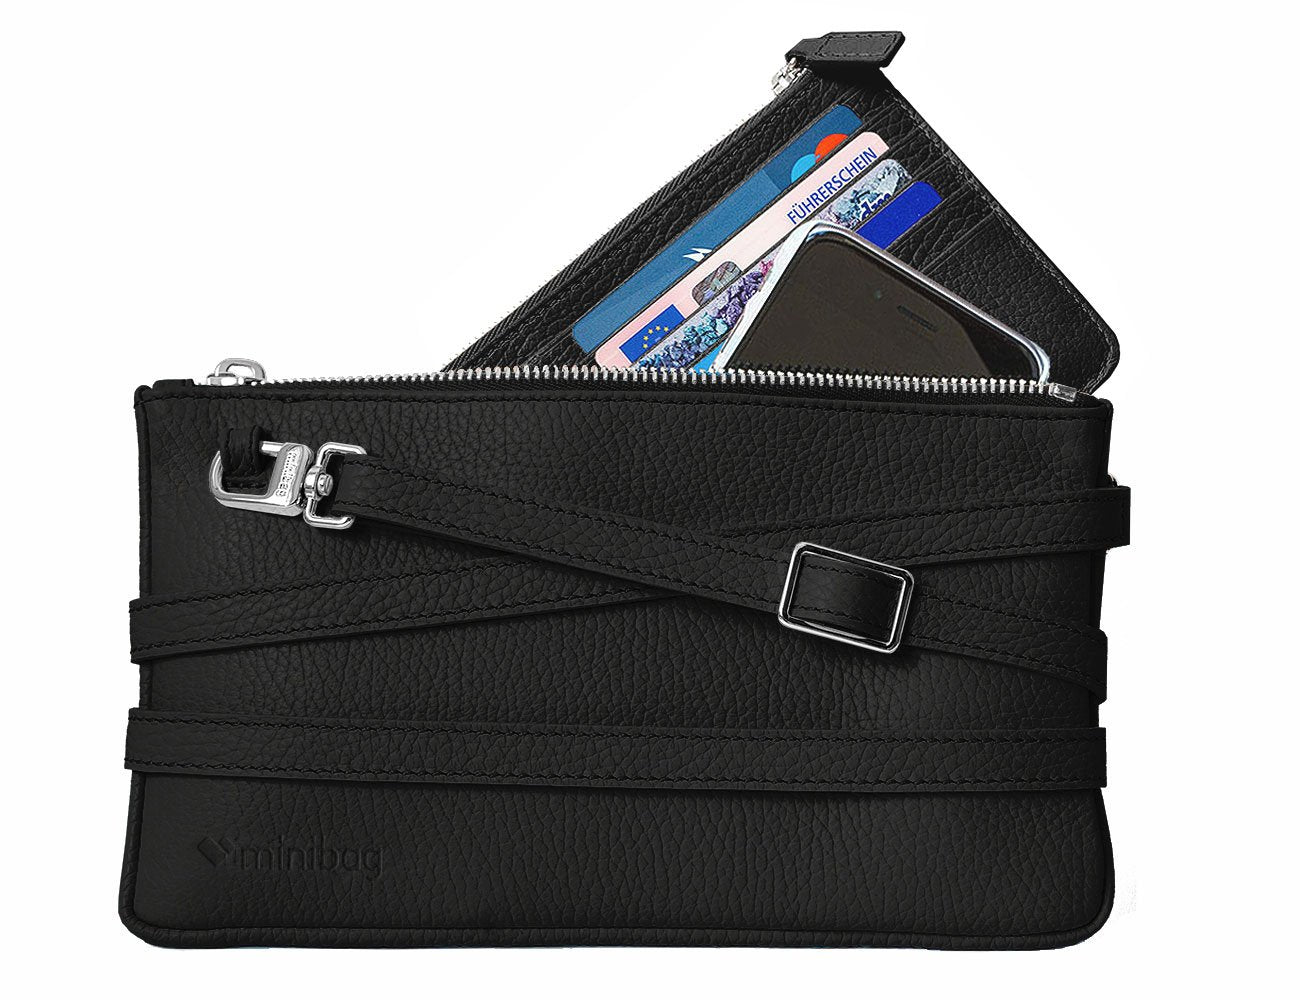 minibag black, minibag wallet black, schwarze Ledertasche, Geldtasche zum Umhängen, minibag